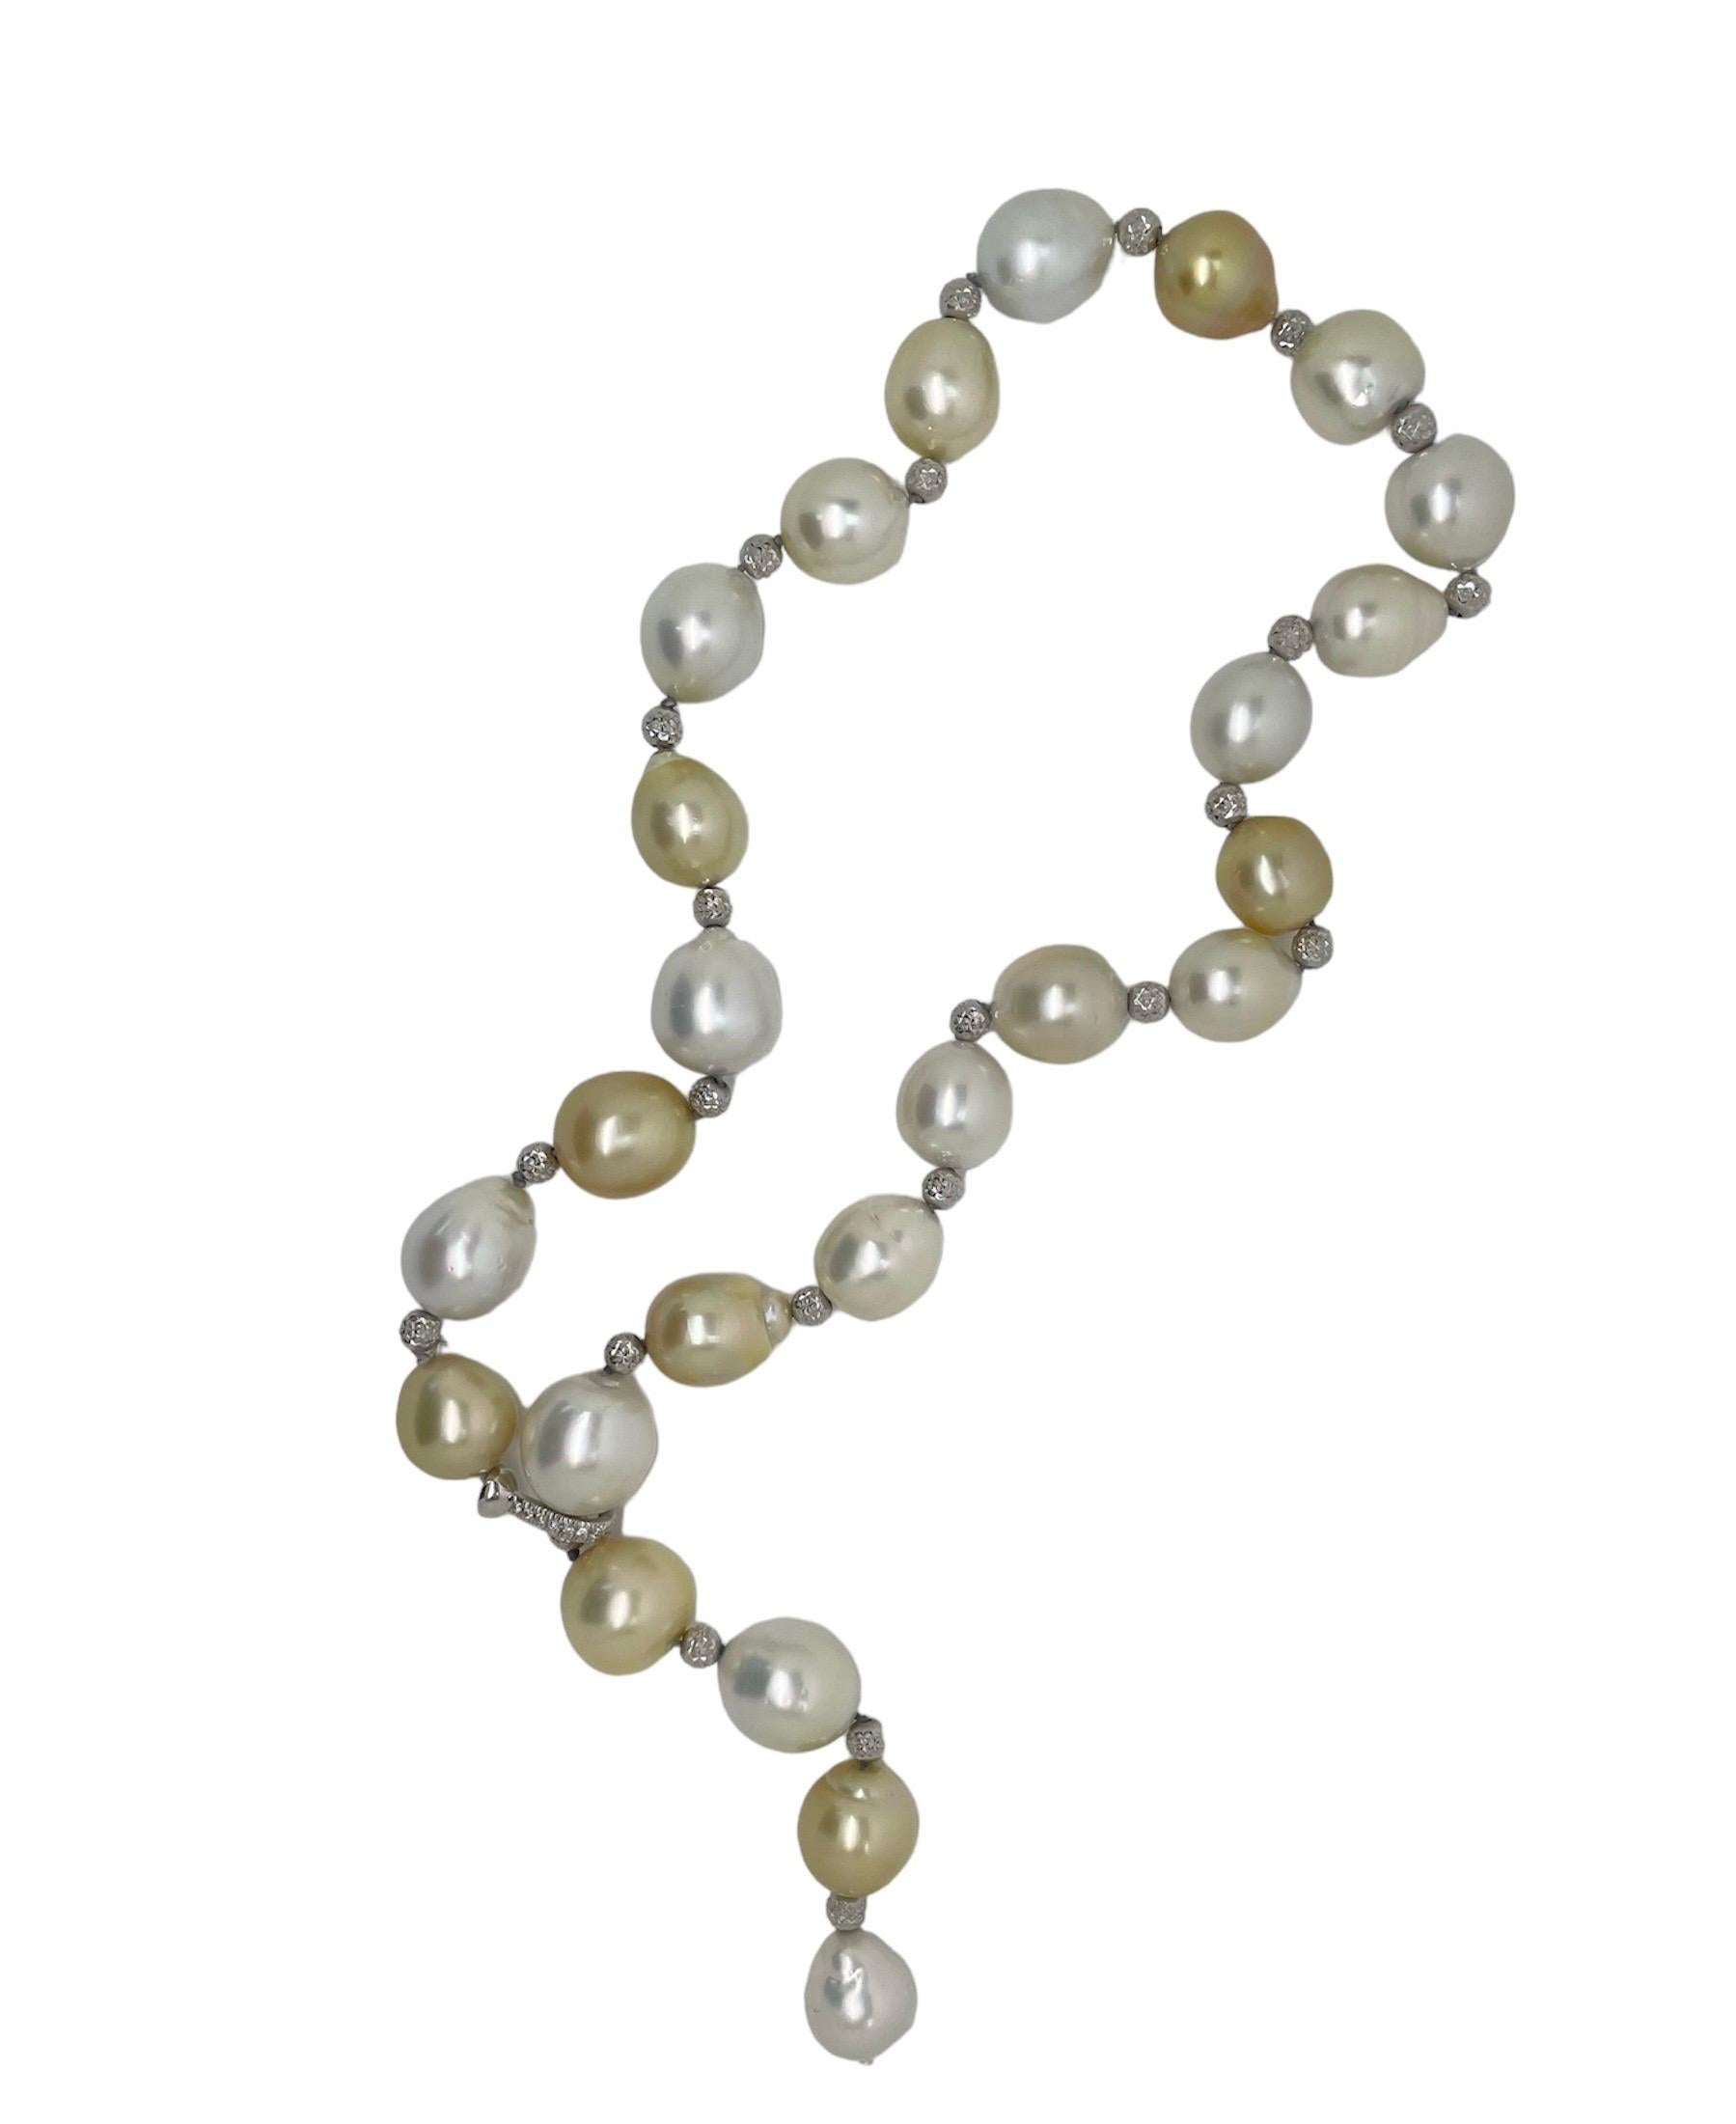 Ce magnifique collier de perles de culture baroques est composé de perles blanches, crème et dorées lustrées, nouées avec des perles rondelles texturées en or blanc et un fermoir réglable en or blanc 18 carats et diamants, permettant au collier